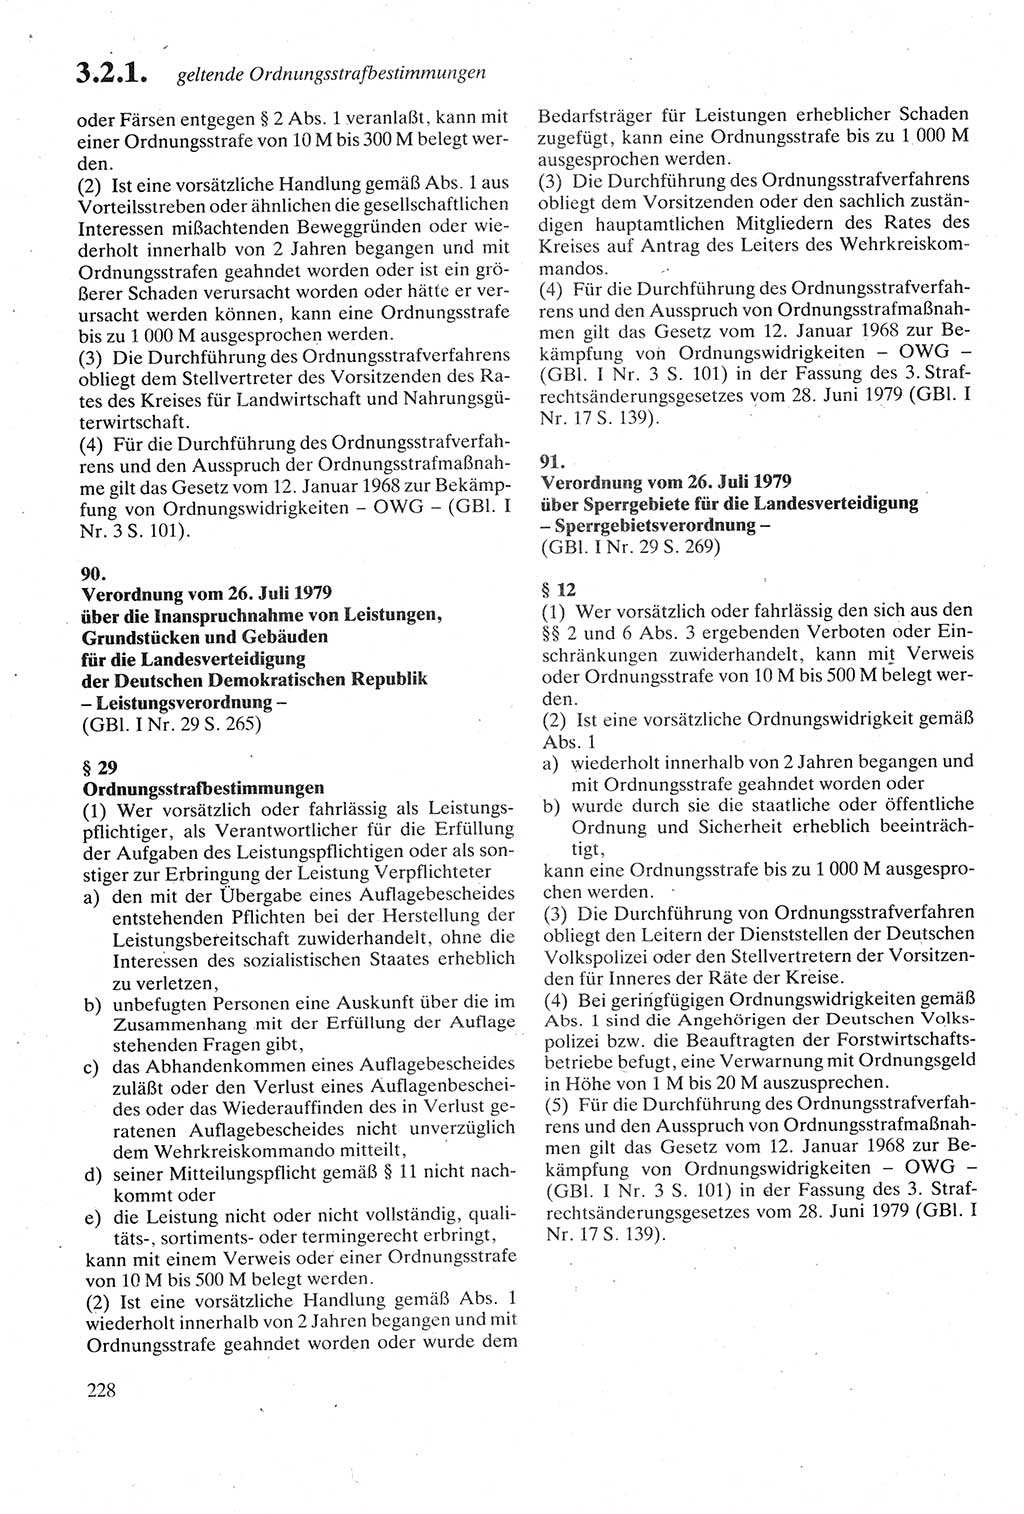 Strafgesetzbuch (StGB) der Deutschen Demokratischen Republik (DDR) sowie angrenzende Gesetze und Bestimmungen 1979, Seite 228 (StGB DDR Ges. Best. 1979, S. 228)